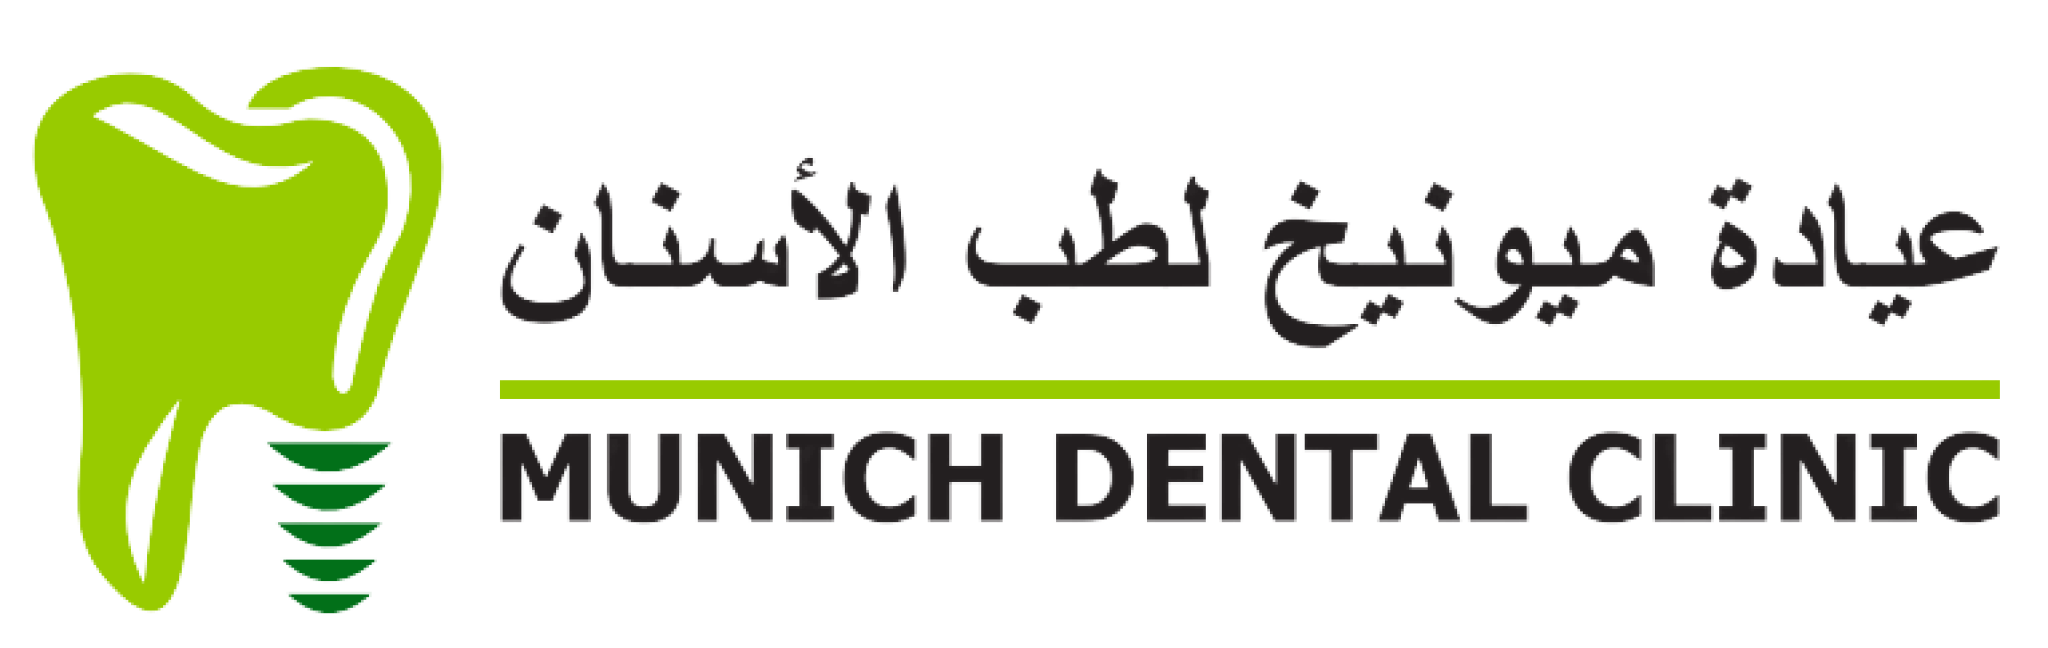 Munich Dental Clinic - Shaikh Zayed 